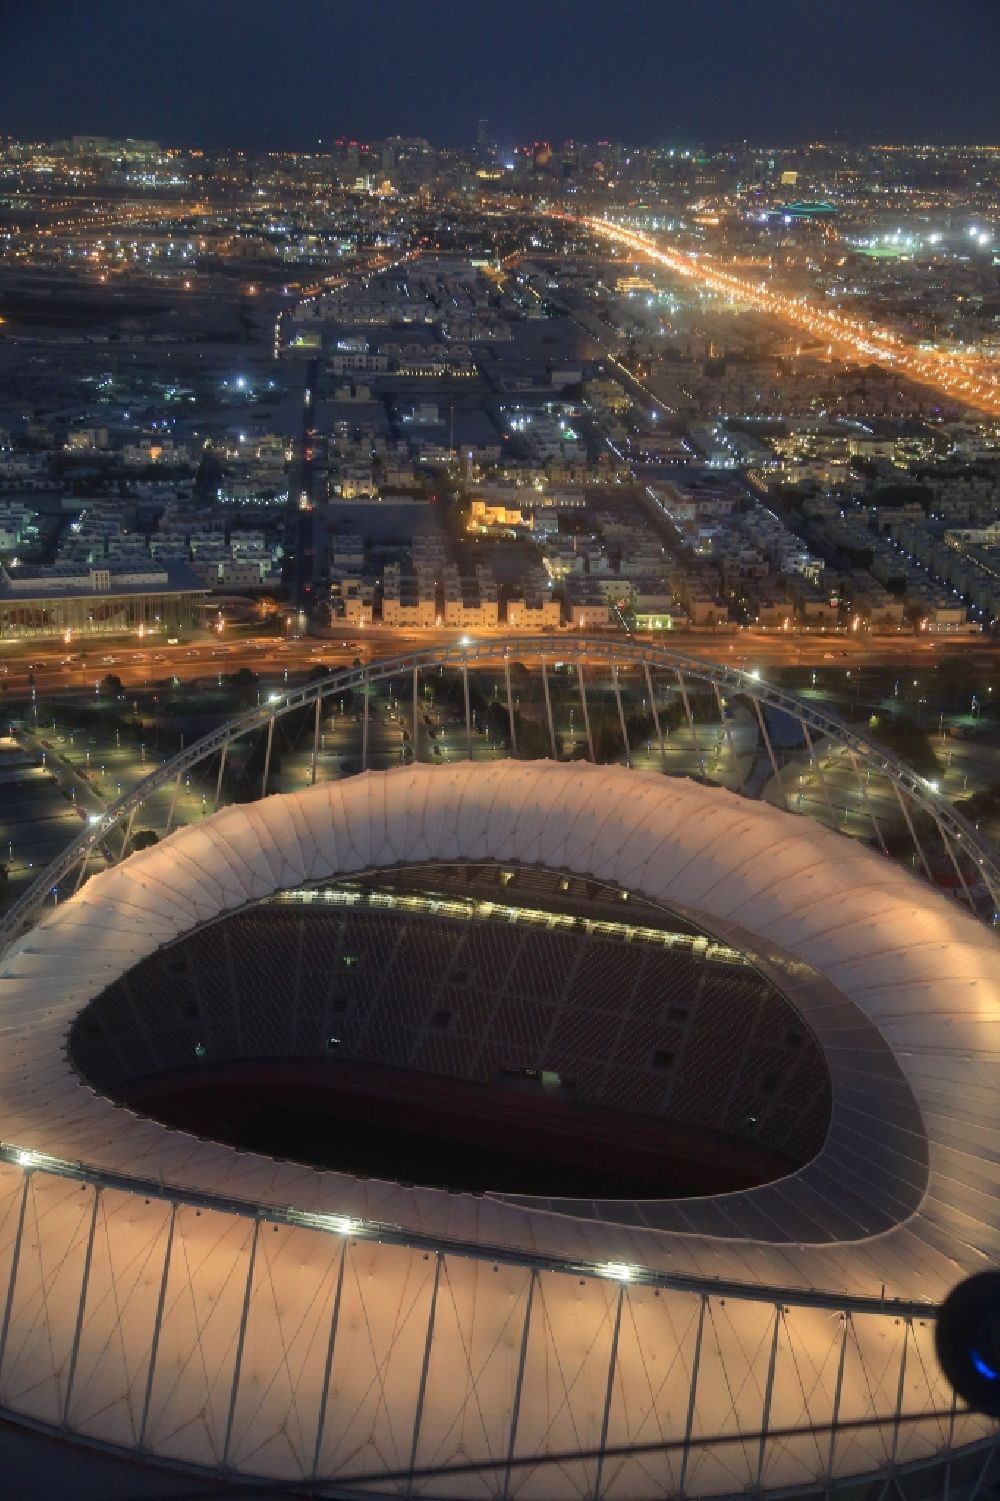 Doha bei Nacht von oben - Nachtluftbild Sportstätten-Gelände der Arena des Stadion The Khalifa International Stadium im Ortsteil Baaya in Doha in Al Rayyan Municipality, Katar. Das Endspiel der Fußball - Weltmeisterschaft 2022 der FIFA soll in diesem Stadion stattfinden